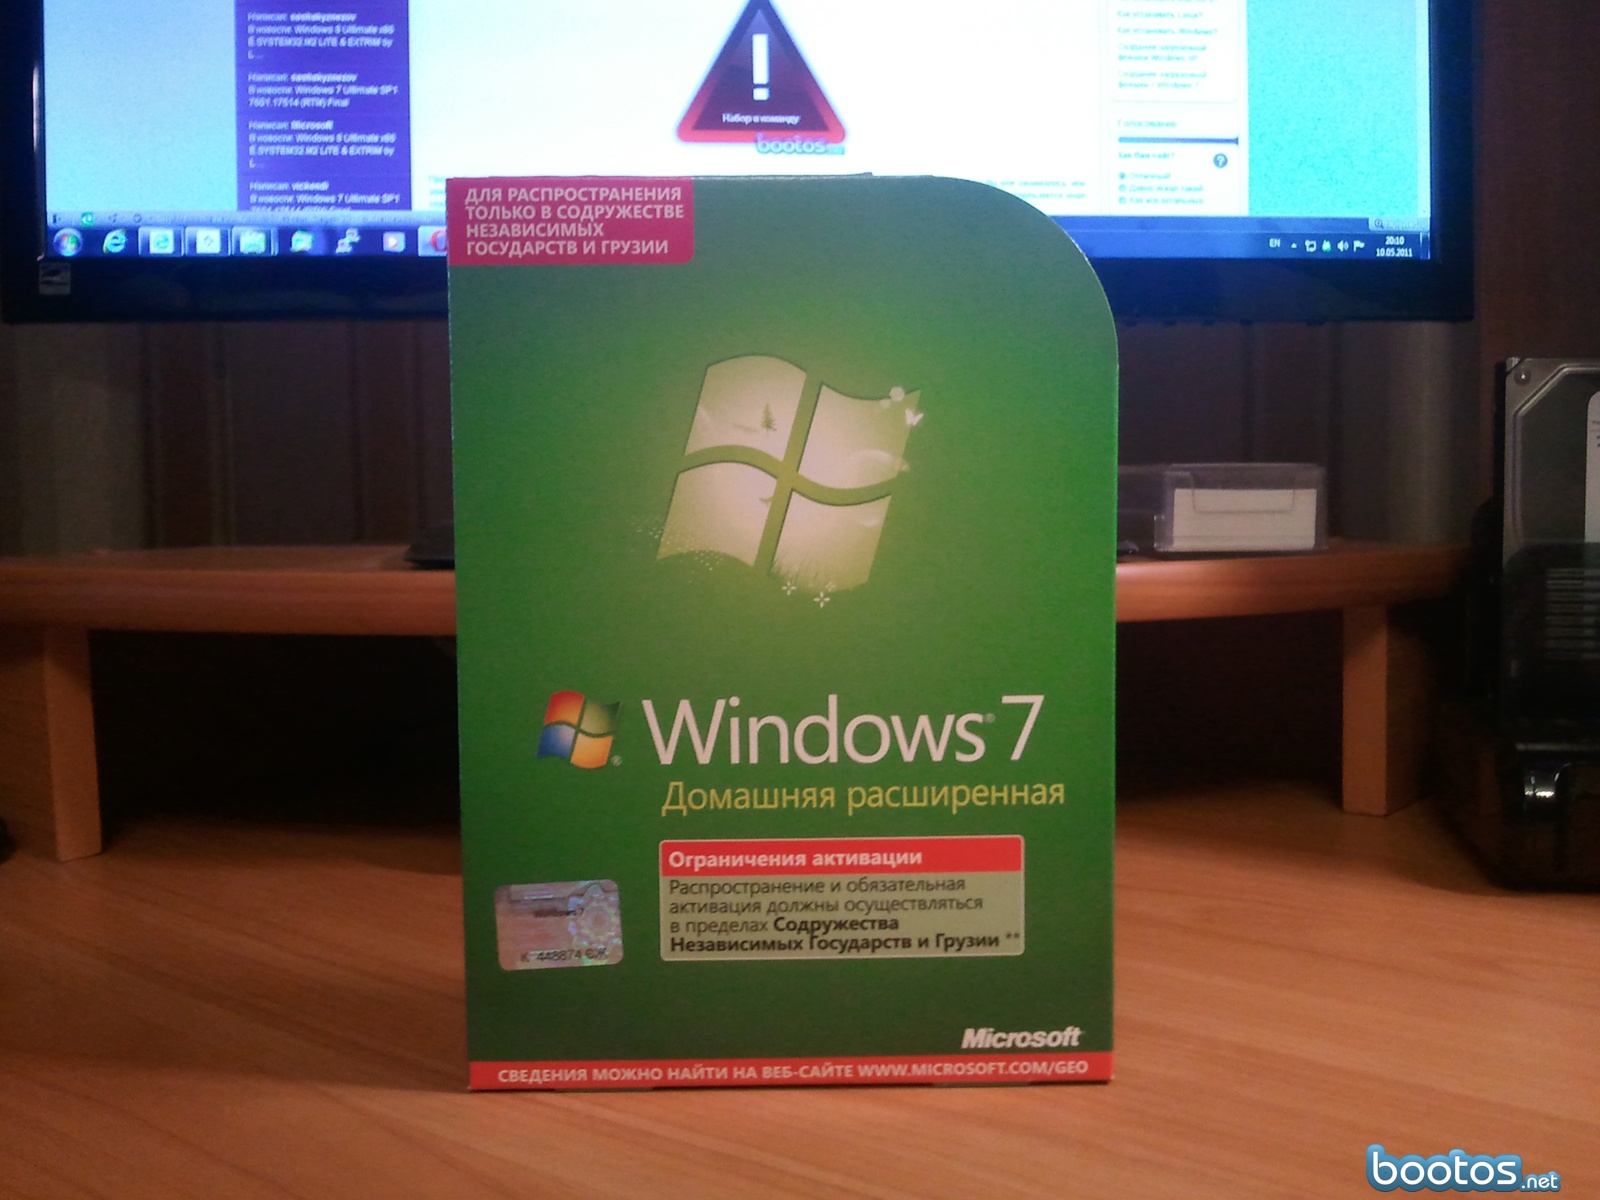 По 7 расширенная. Windows домашняя расширенная. Виндовс 7 домашний расширенный. Виндовс 7 домашняя. Windows 7 расширенная.